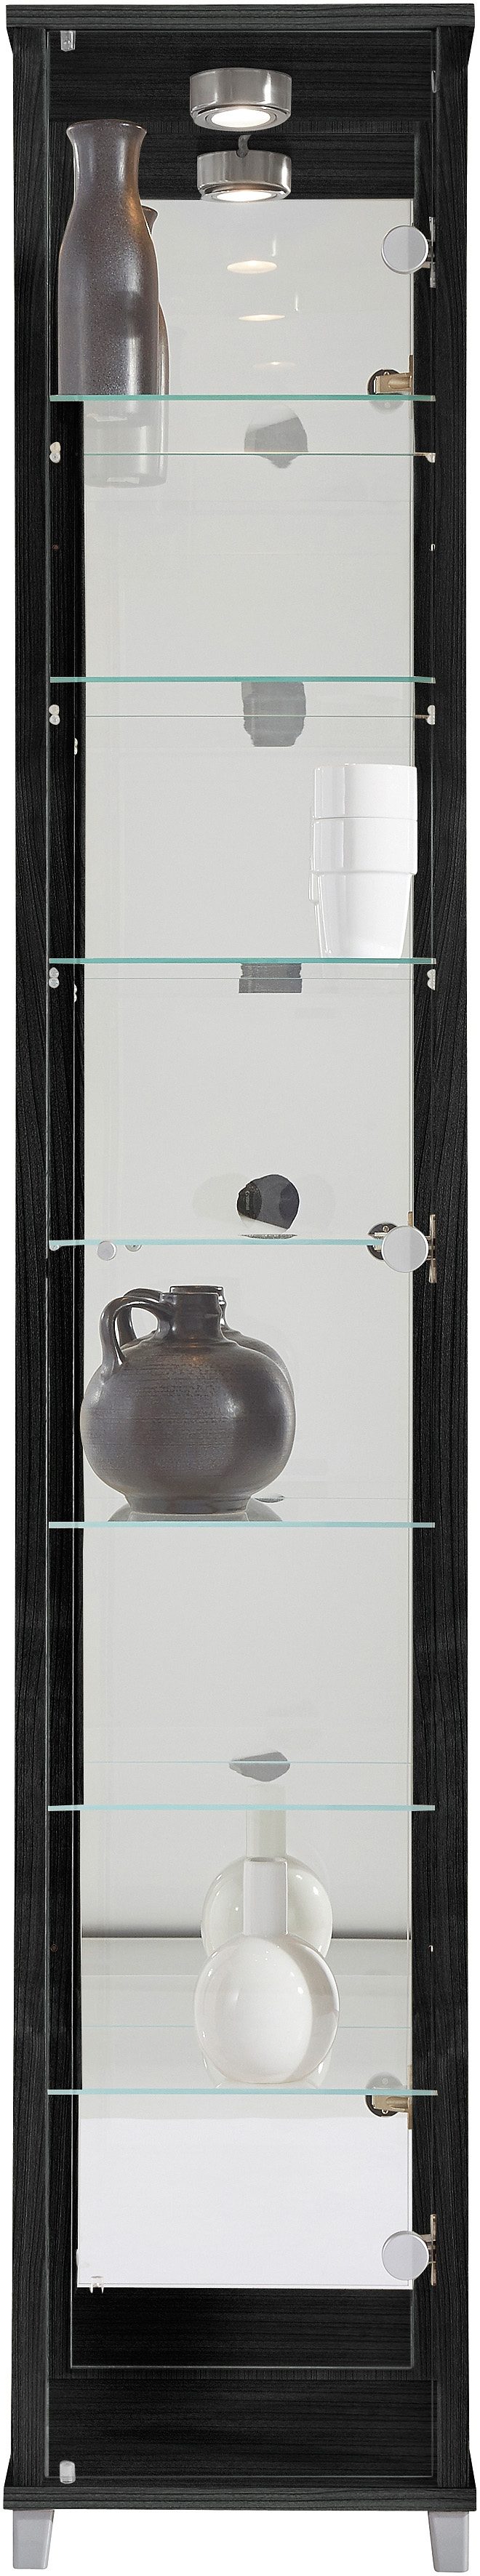 Kasten  vitrinekasten Vitrinekast met spiegelachterwand  7 glasplateaus 531717